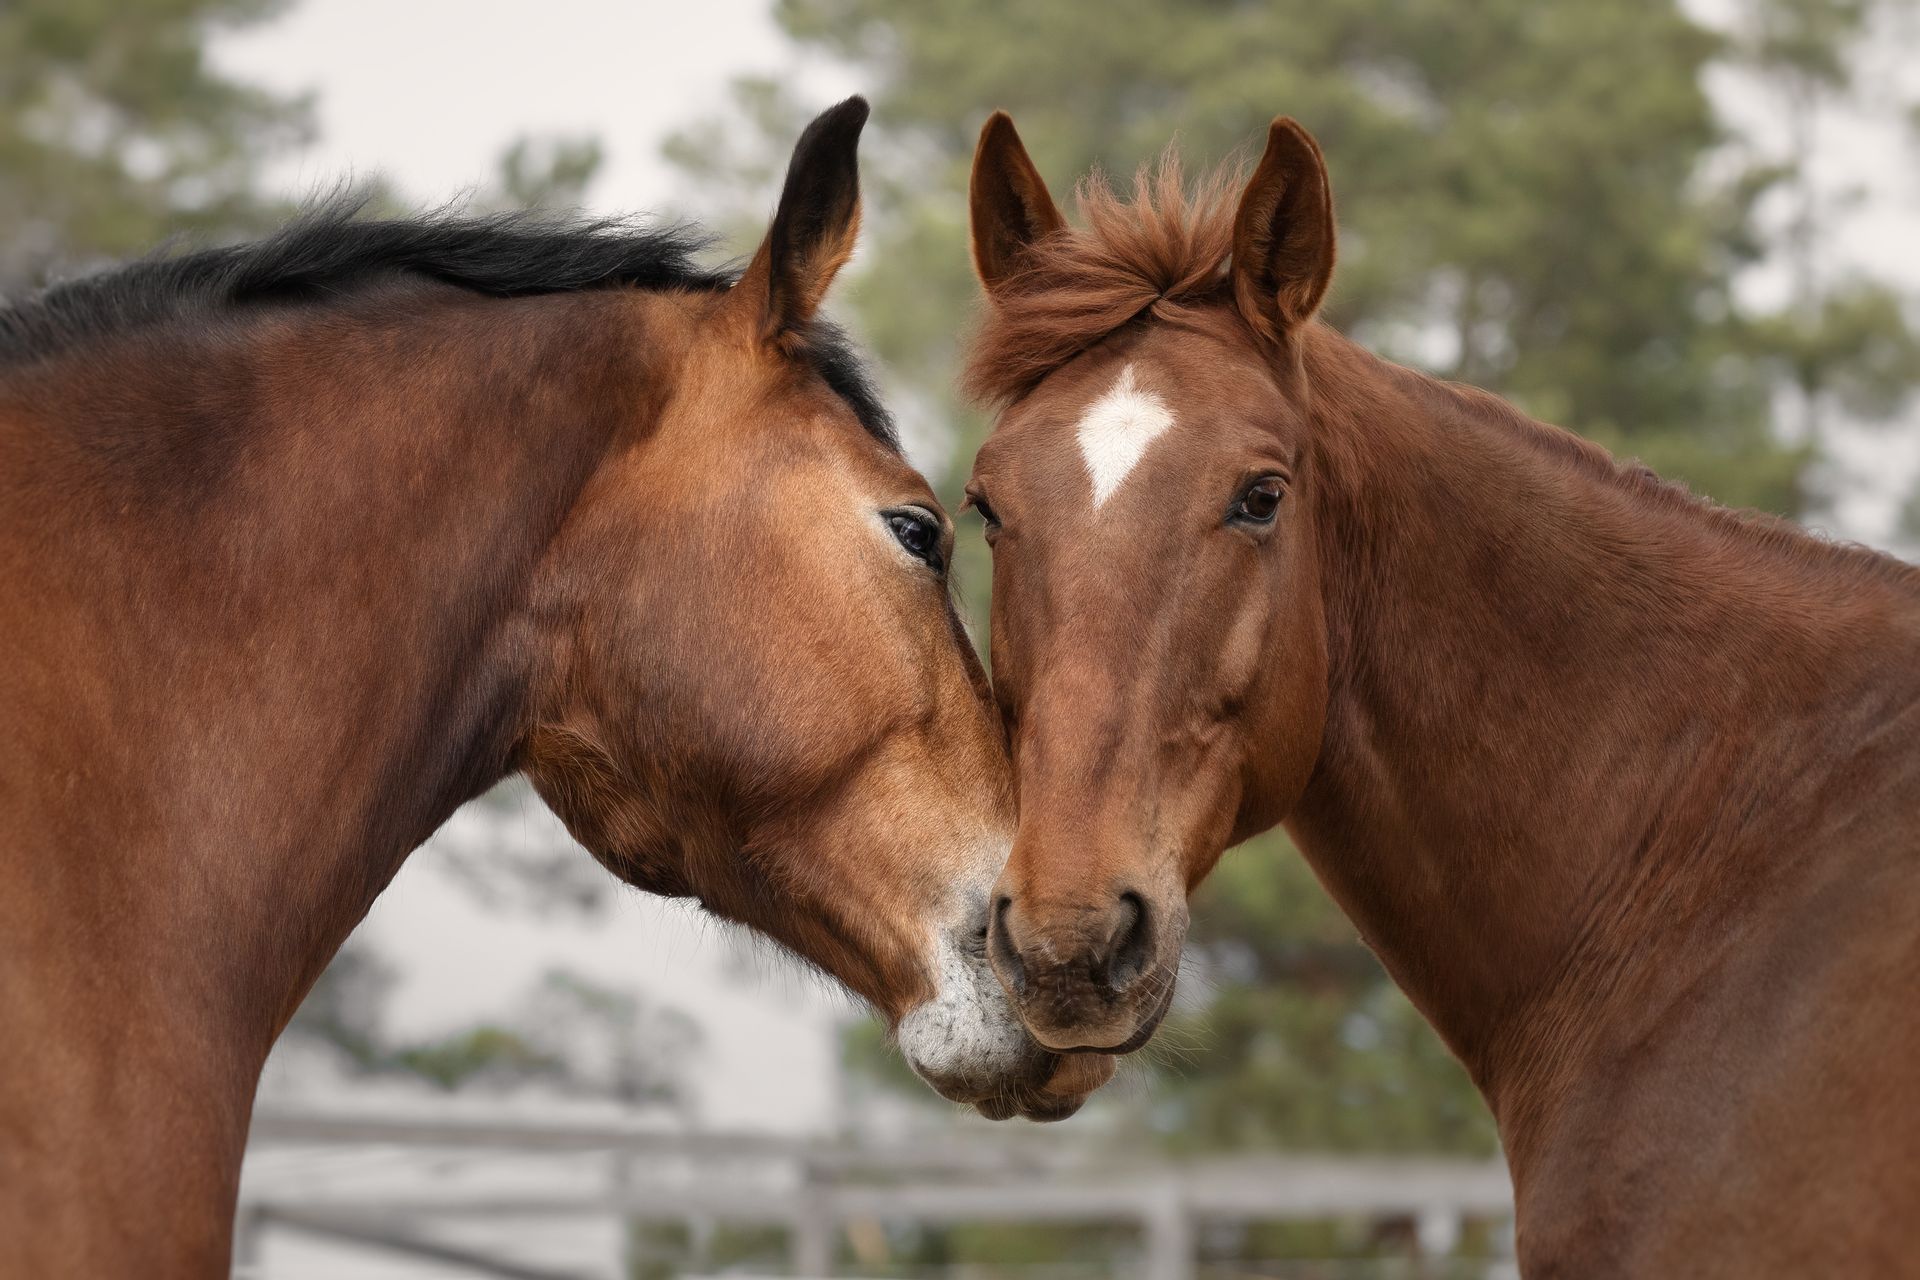 Zwei braune Pferde berühren ihre Nasen in einem eingezäunten Bereich.